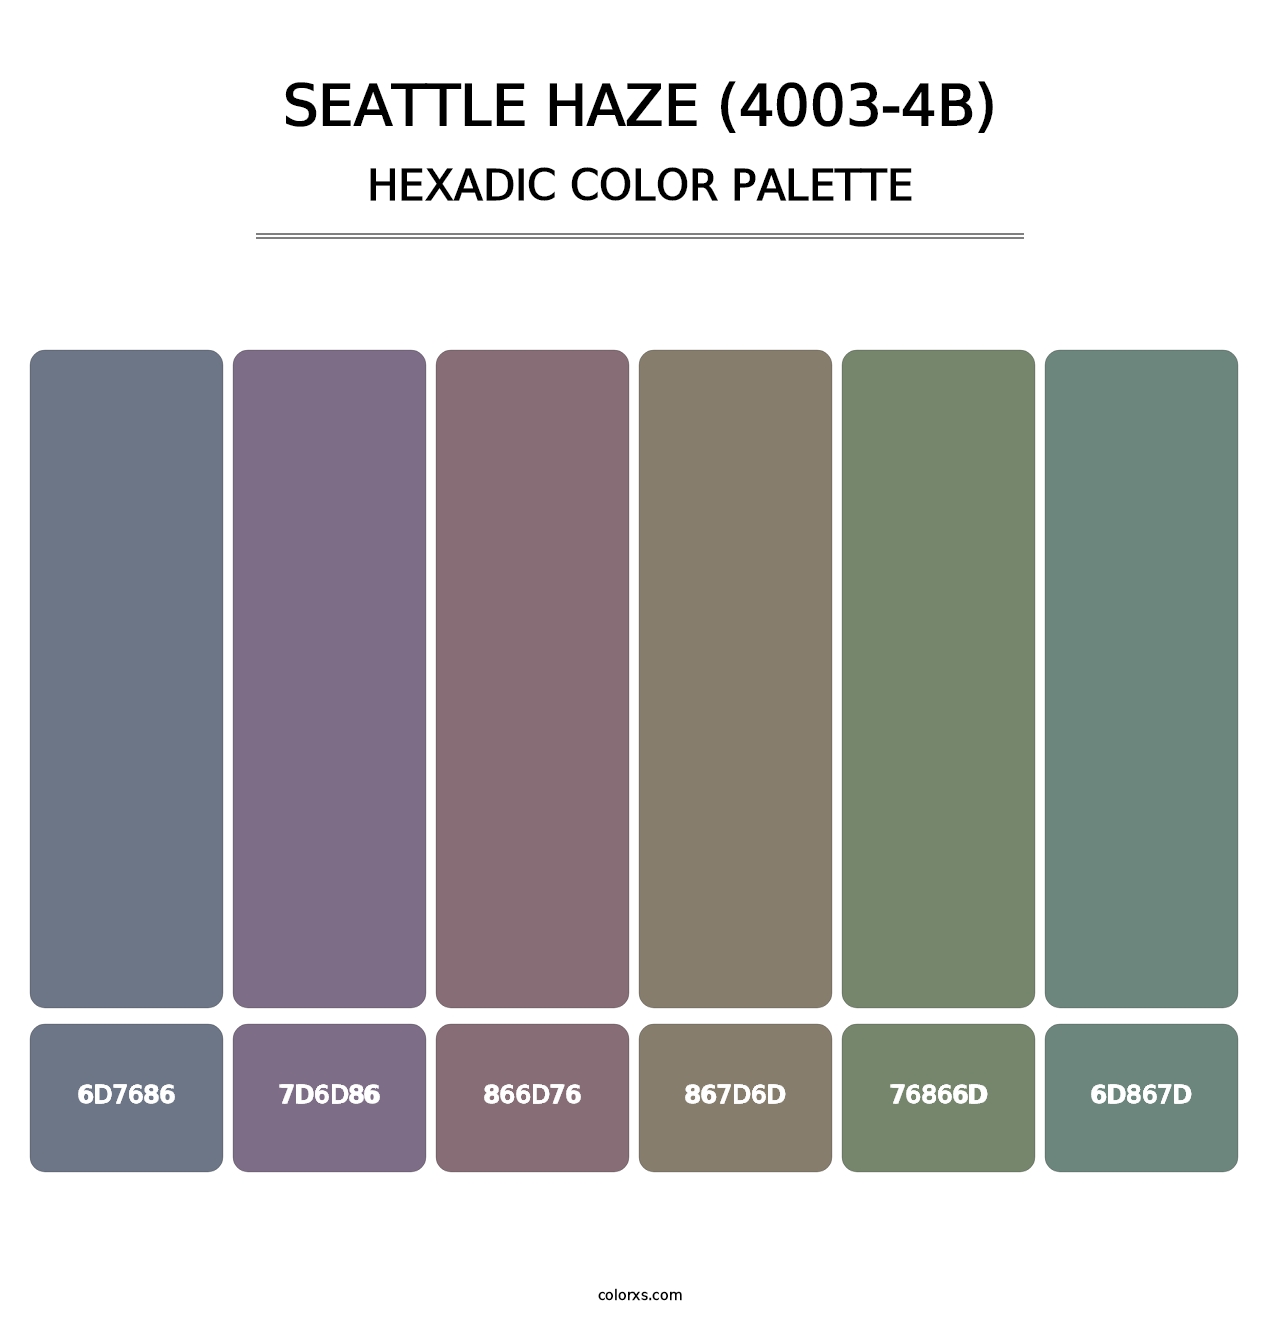 Seattle Haze (4003-4B) - Hexadic Color Palette